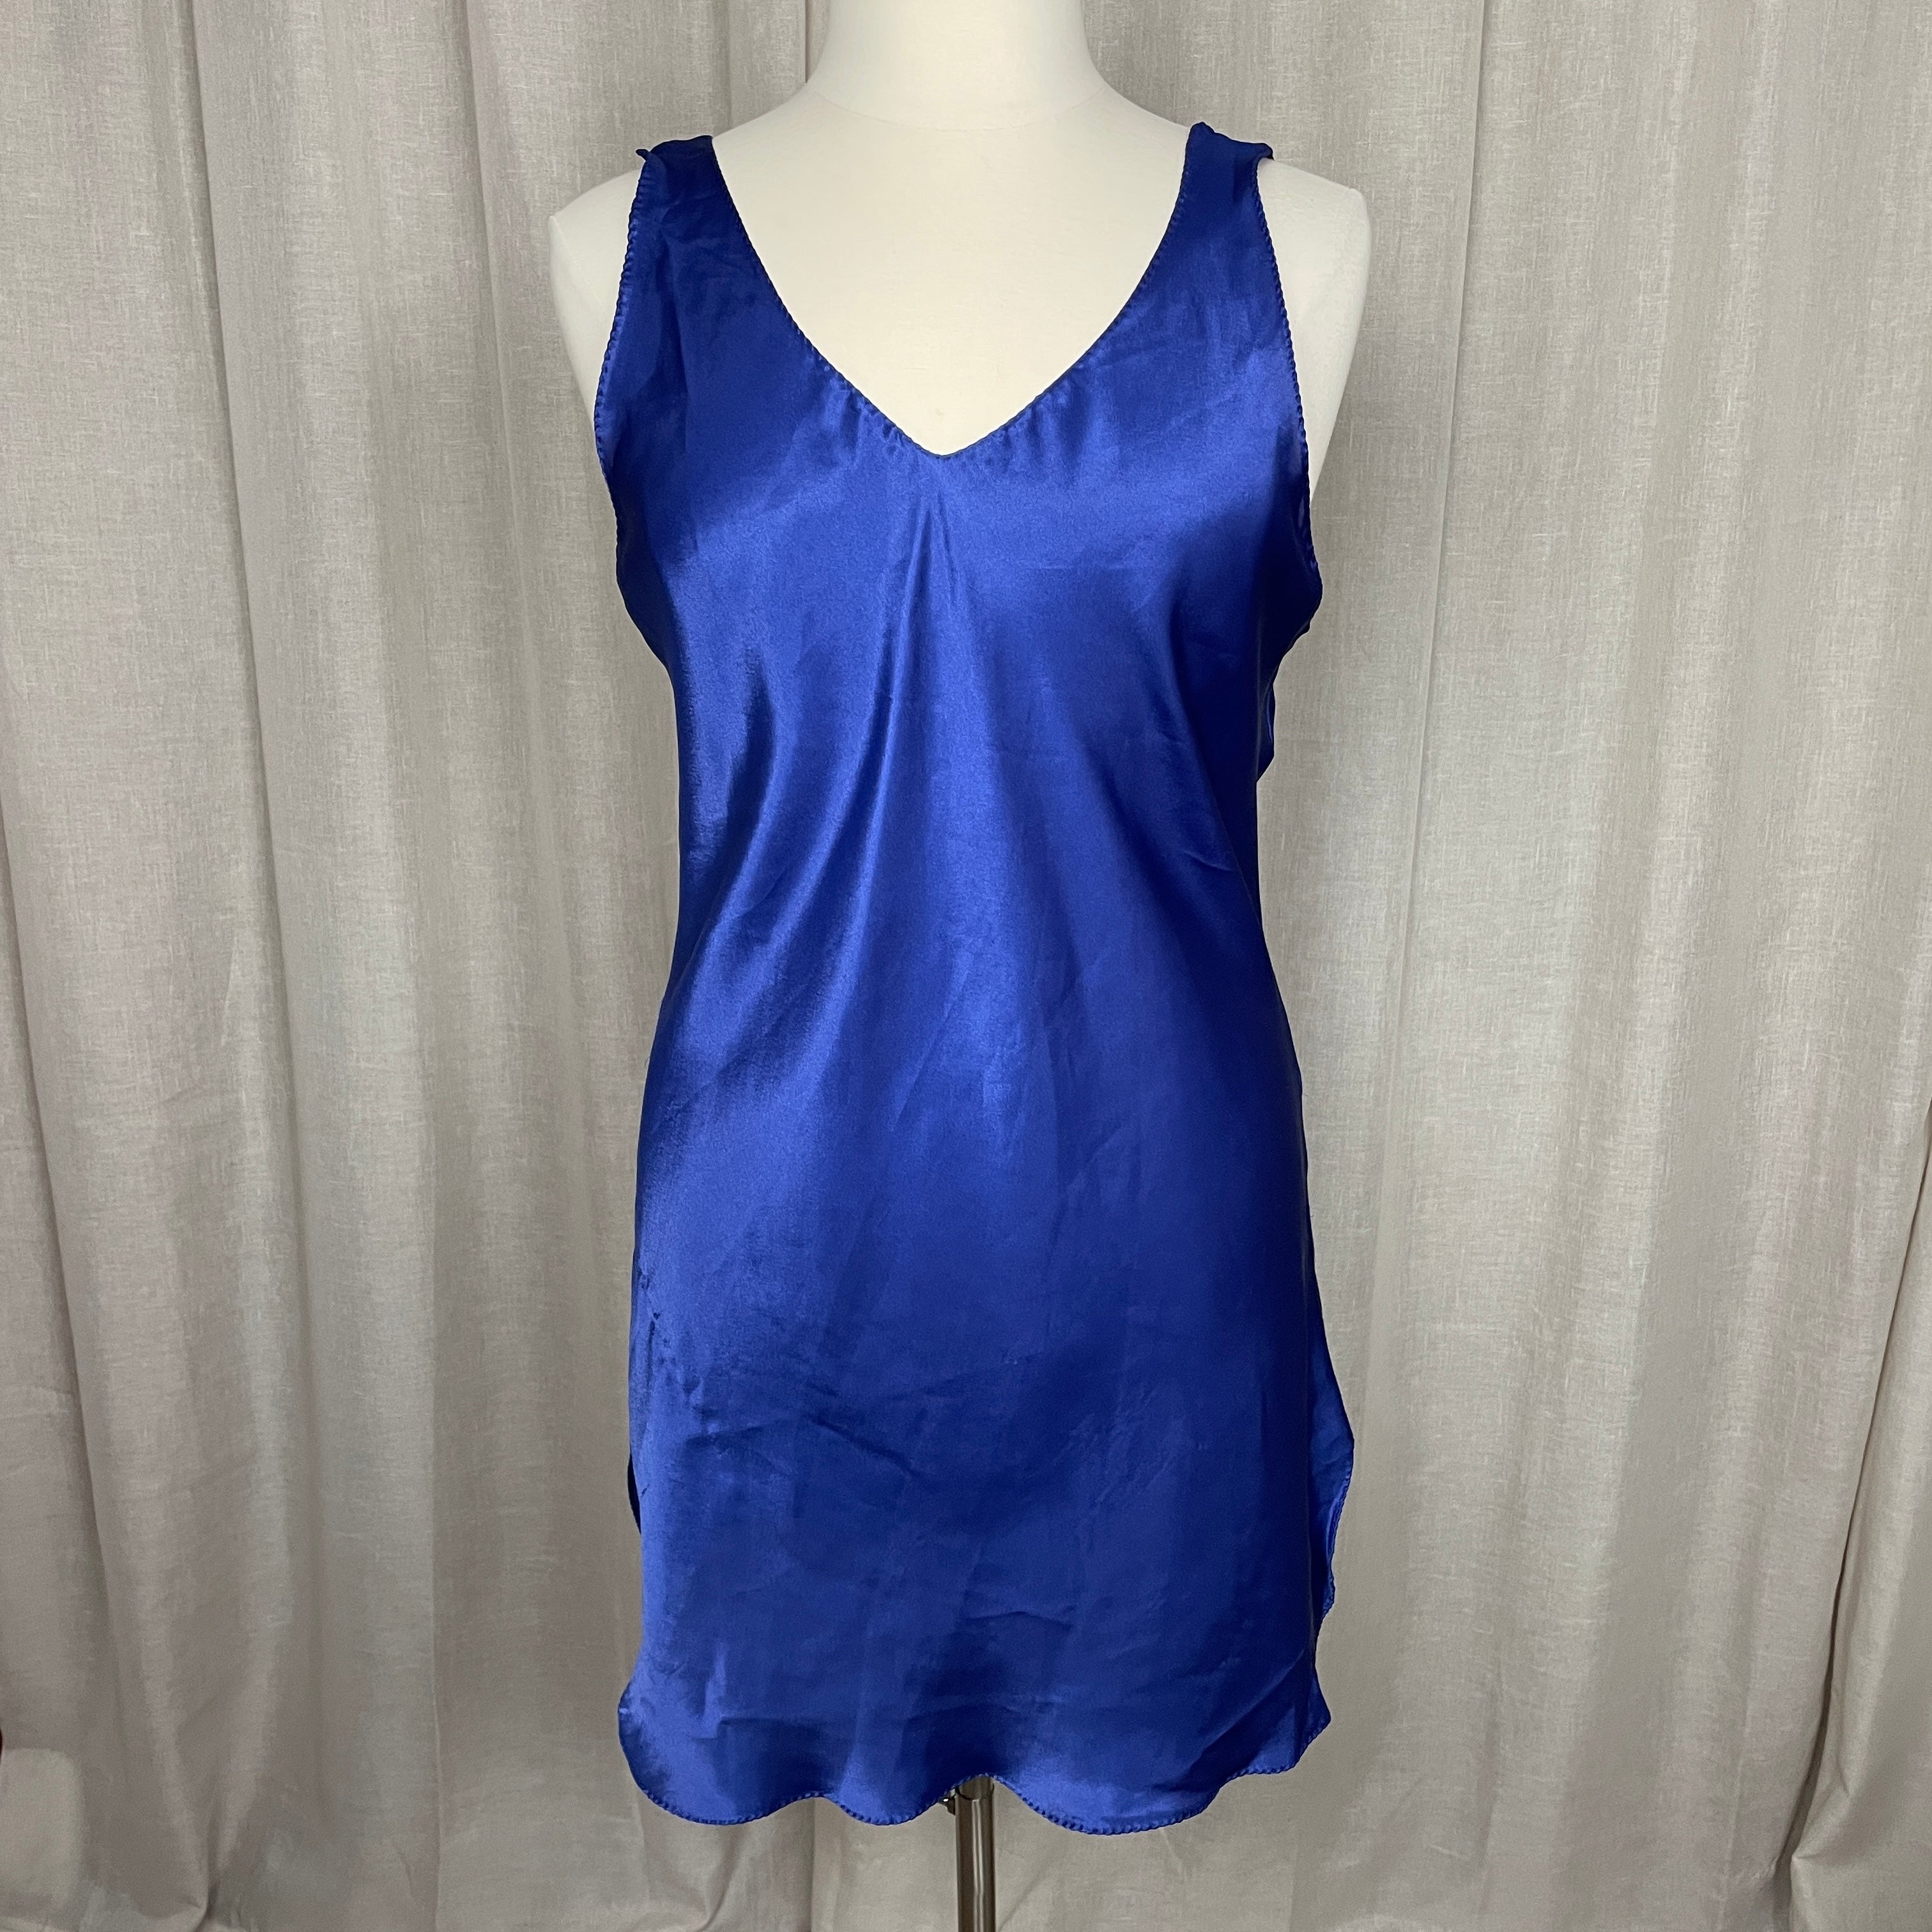 Vintage 80s/90s Slip Dress Xl Blue Satin V-neck Mini Open Back By Val ...